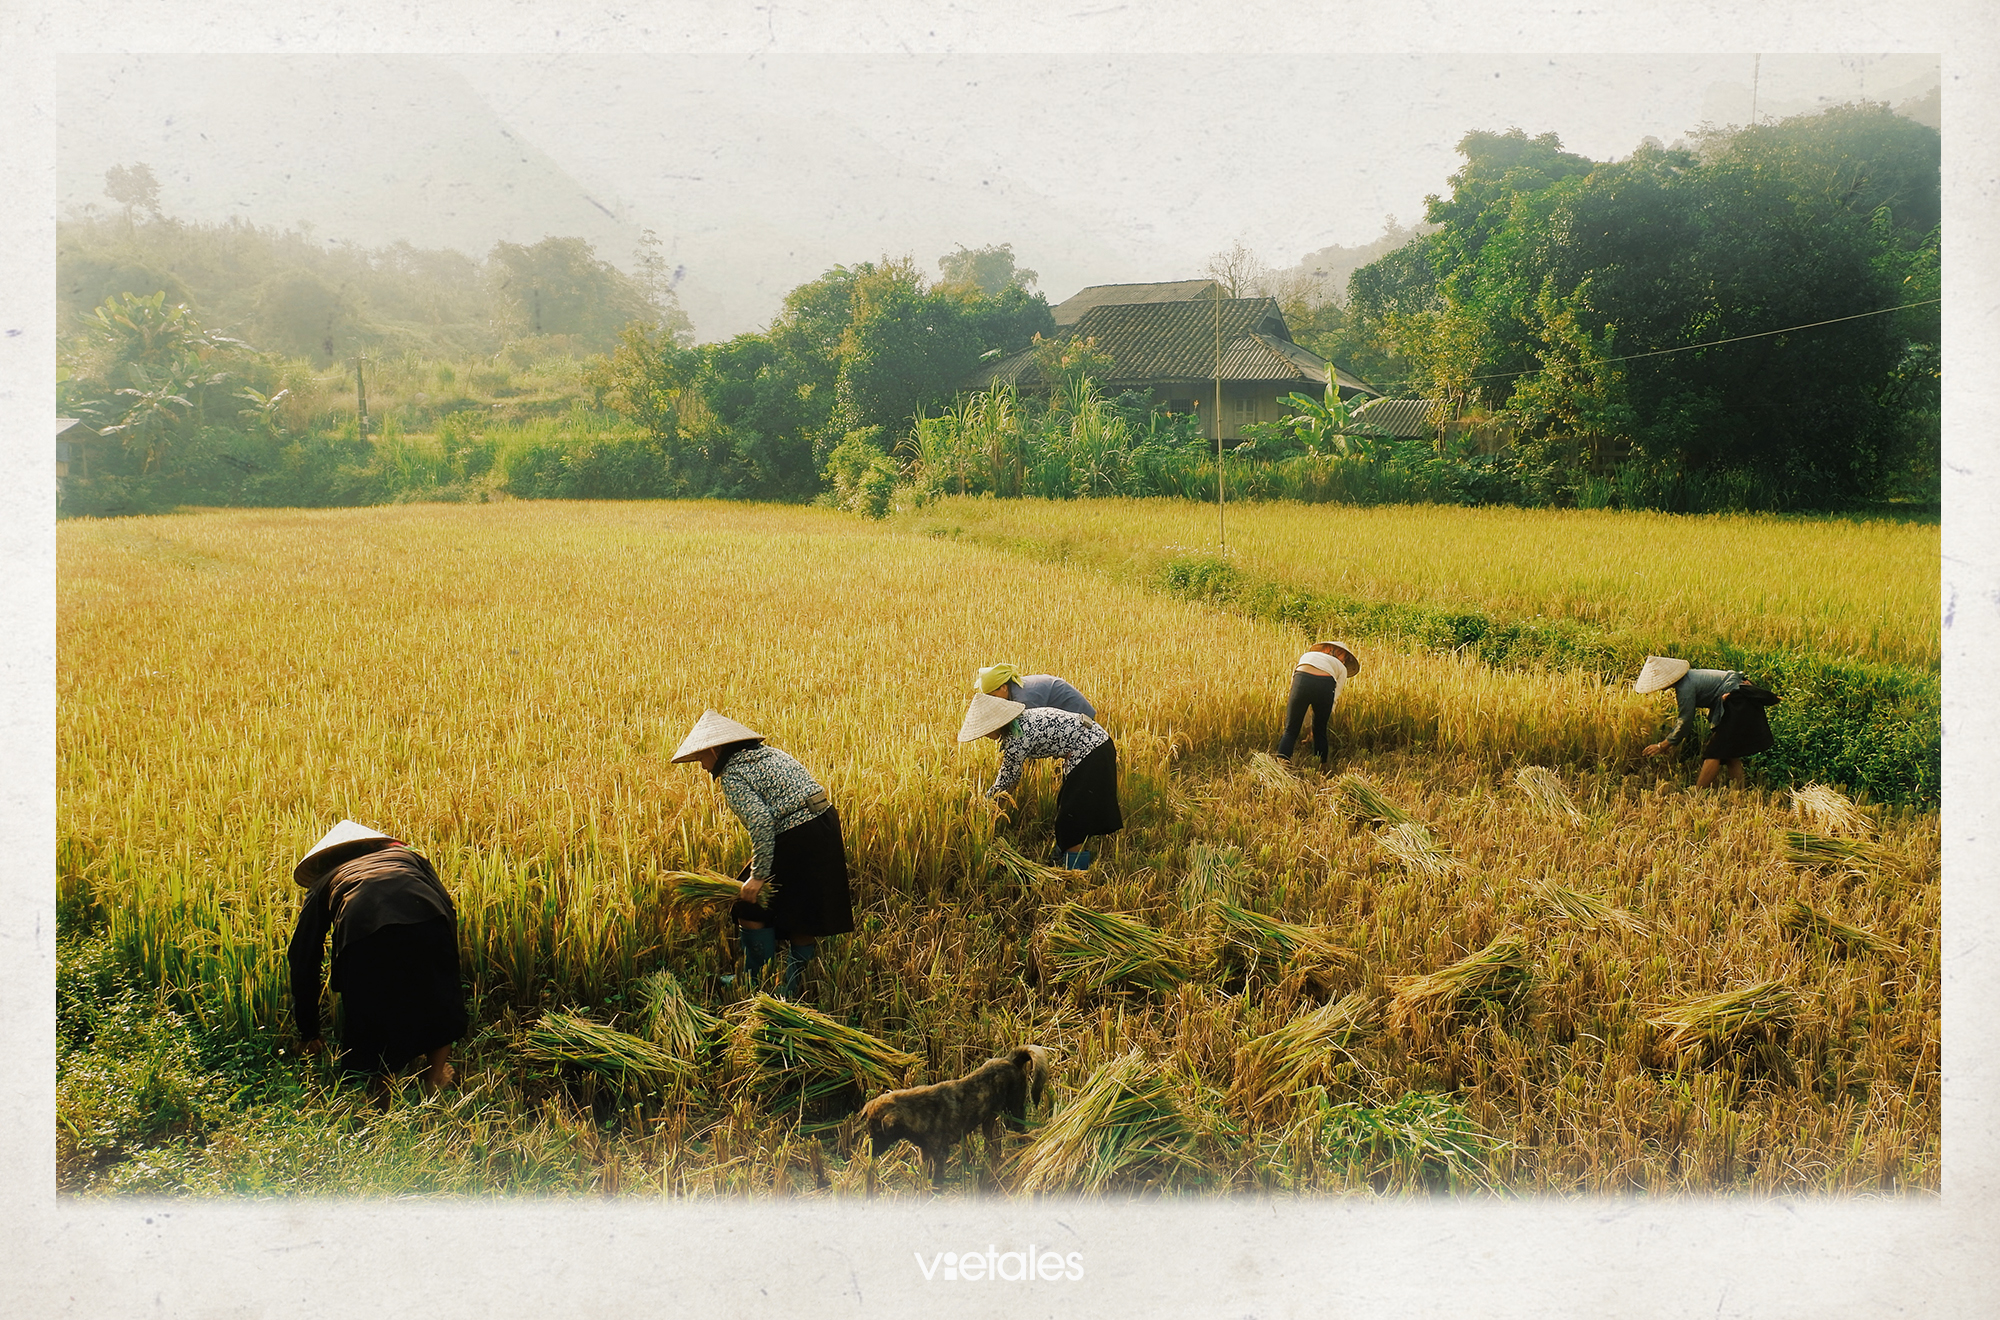 Đồng bào đội nón lá gặt lúa